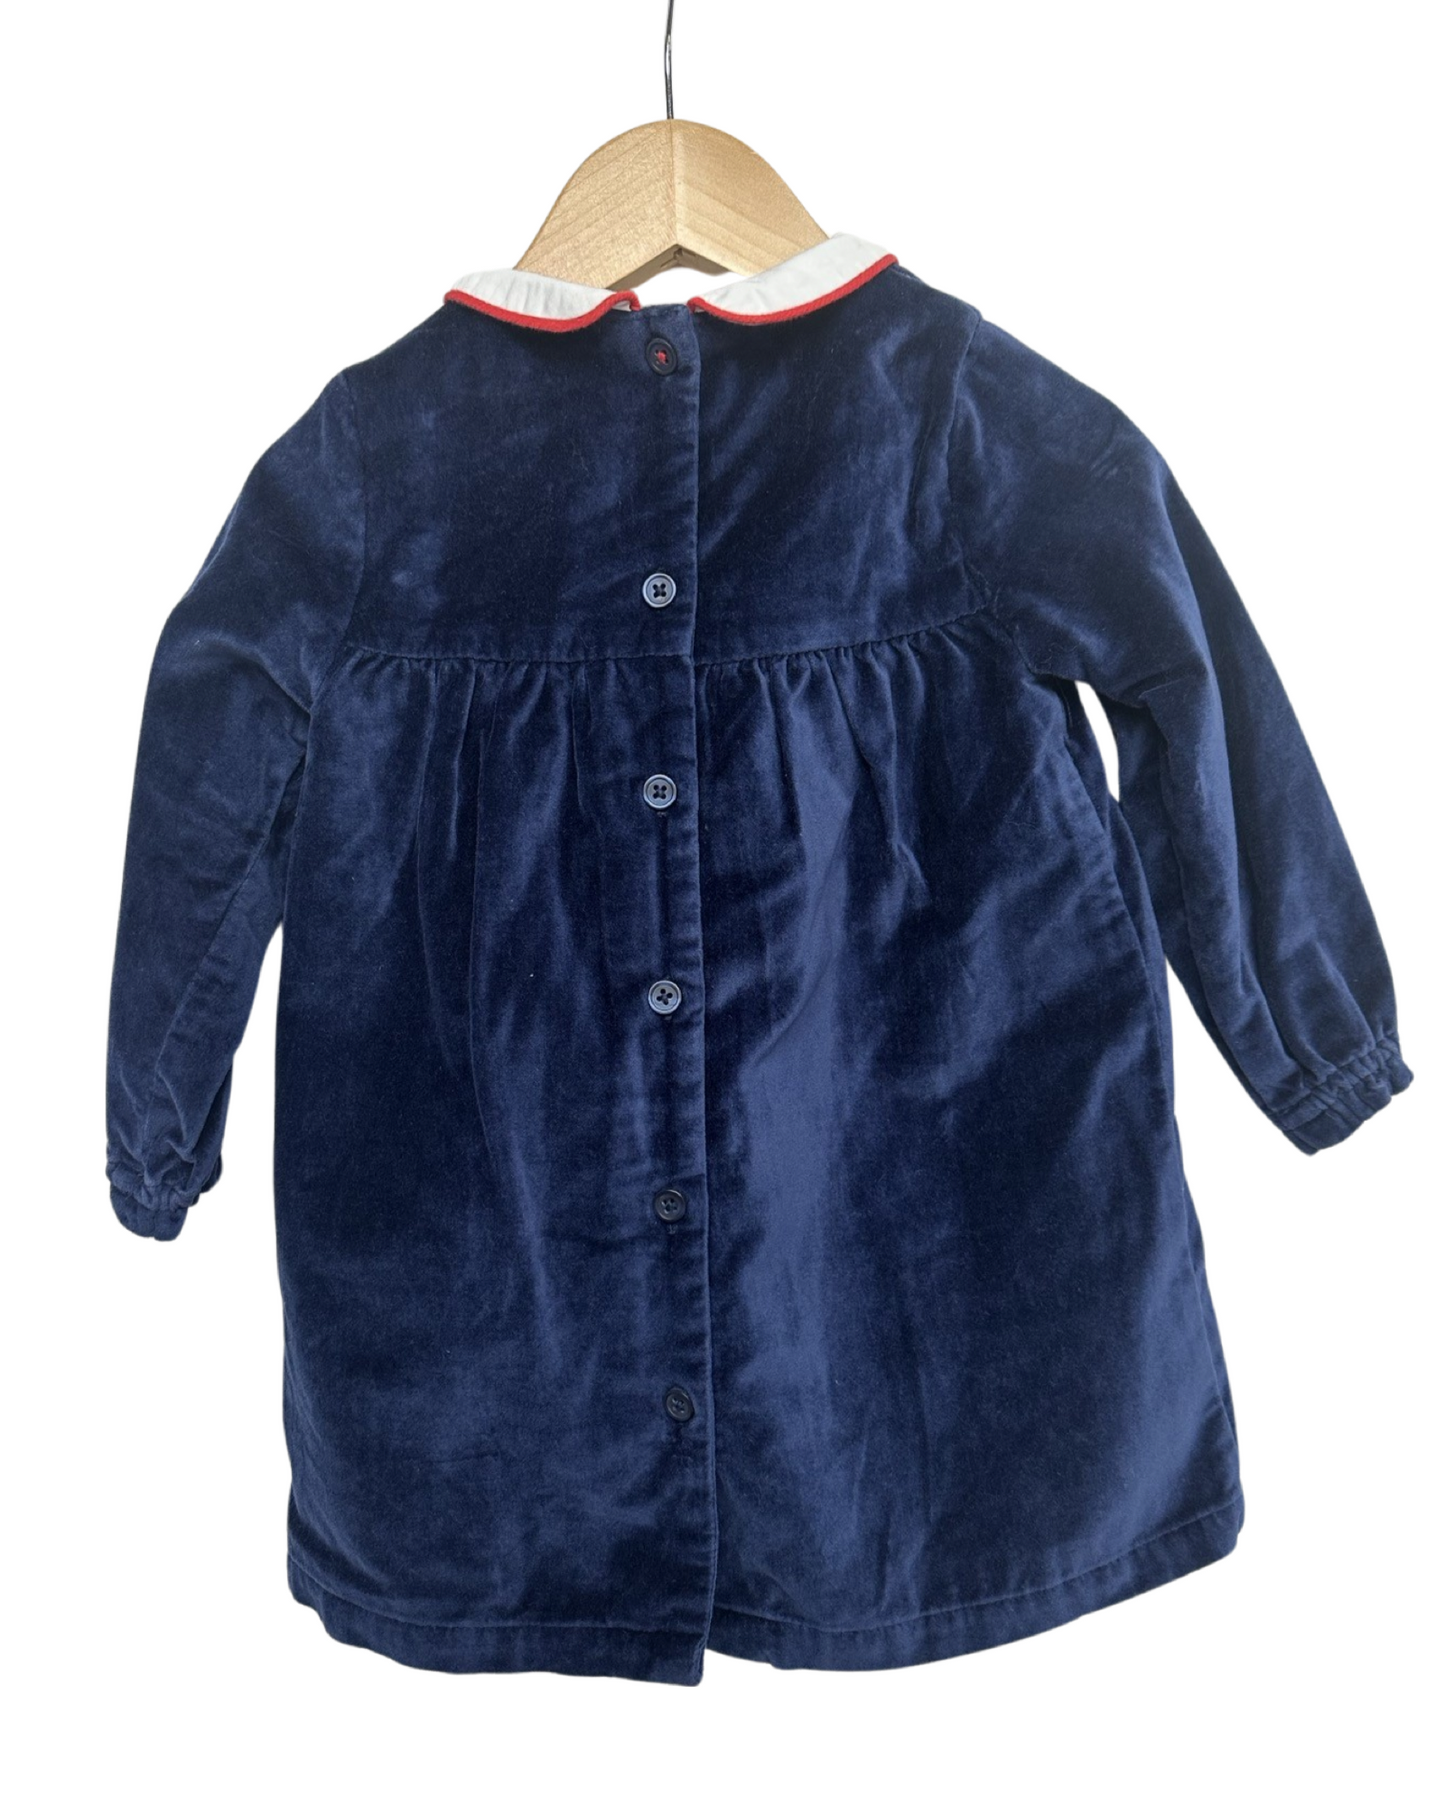 Baby Boden navy velvet baby dress (size 12-18mths)